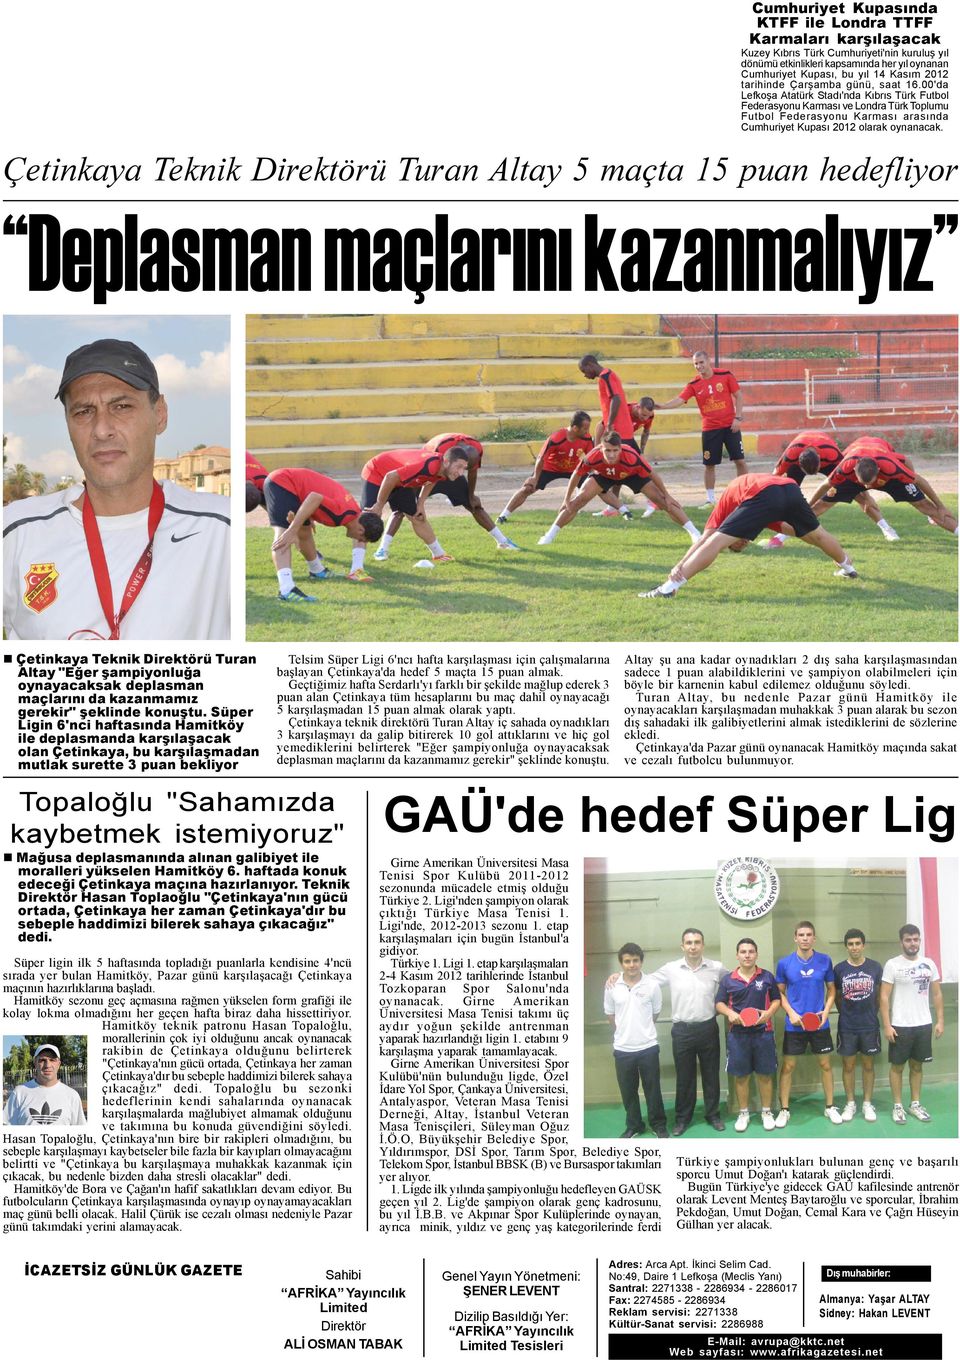 00'da Lefkoþa Atatürk Stadý'nda Kýbrýs Türk Futbol Federasyonu Karmasý ve Londra Türk Toplumu Futbol Federasyonu Karmasý arasýnda Cumhuriyet Kupasý 2012 olarak oynanacak.